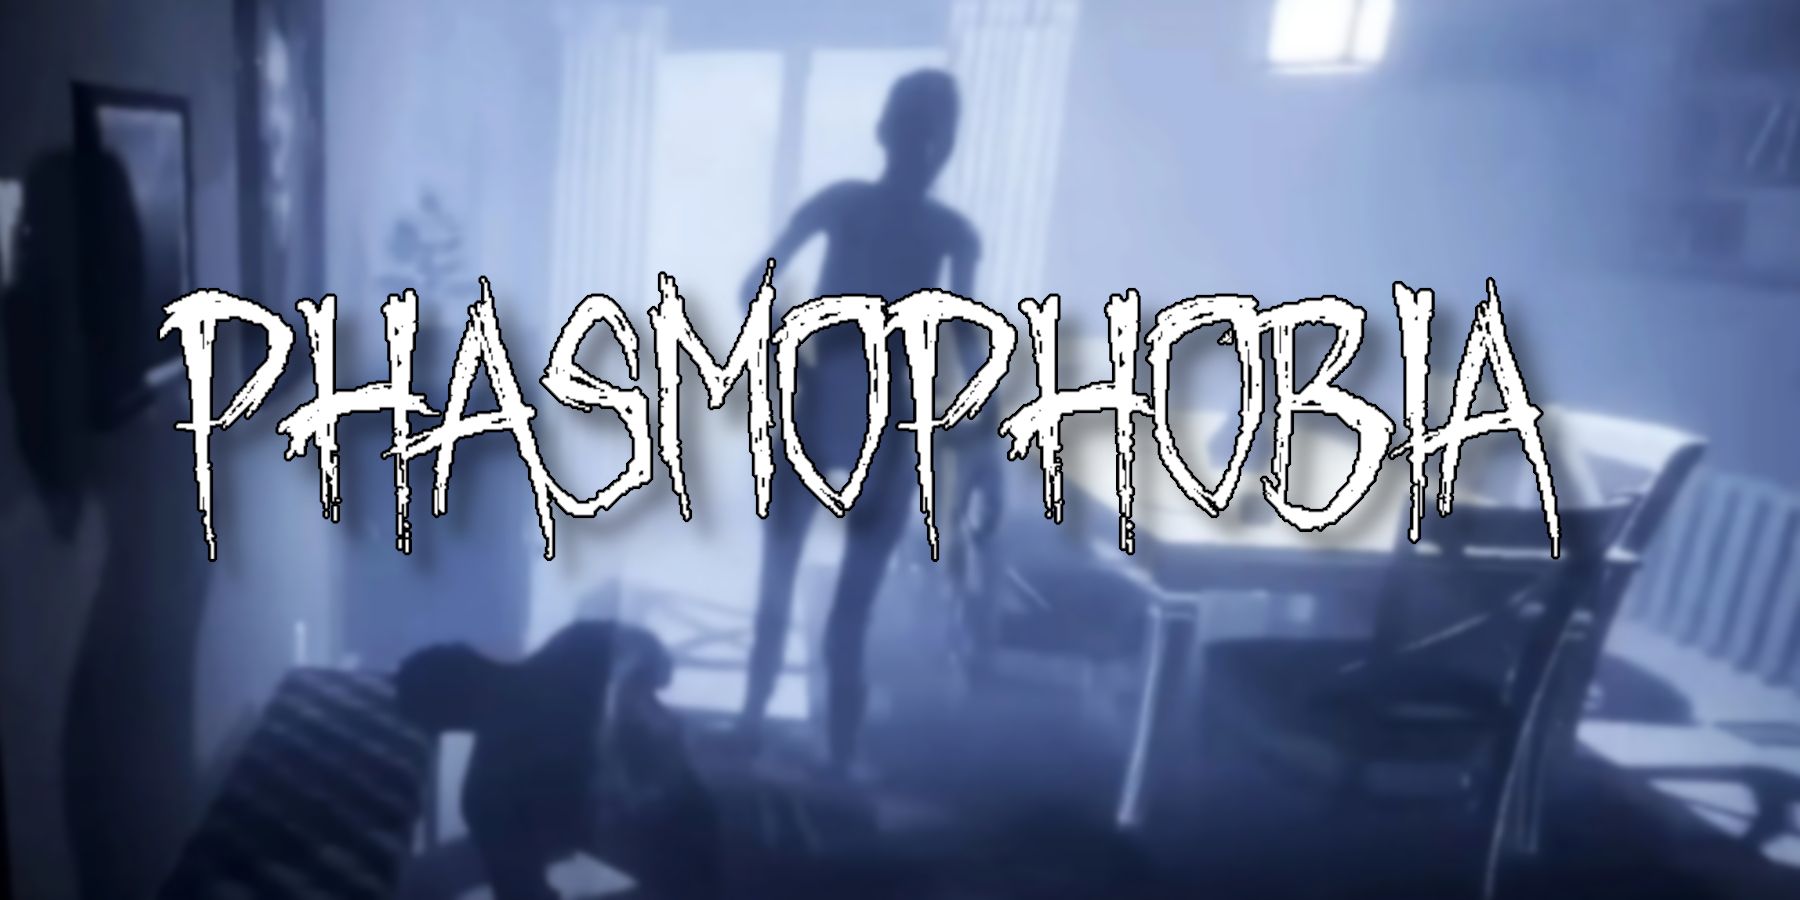 Phasmophobia